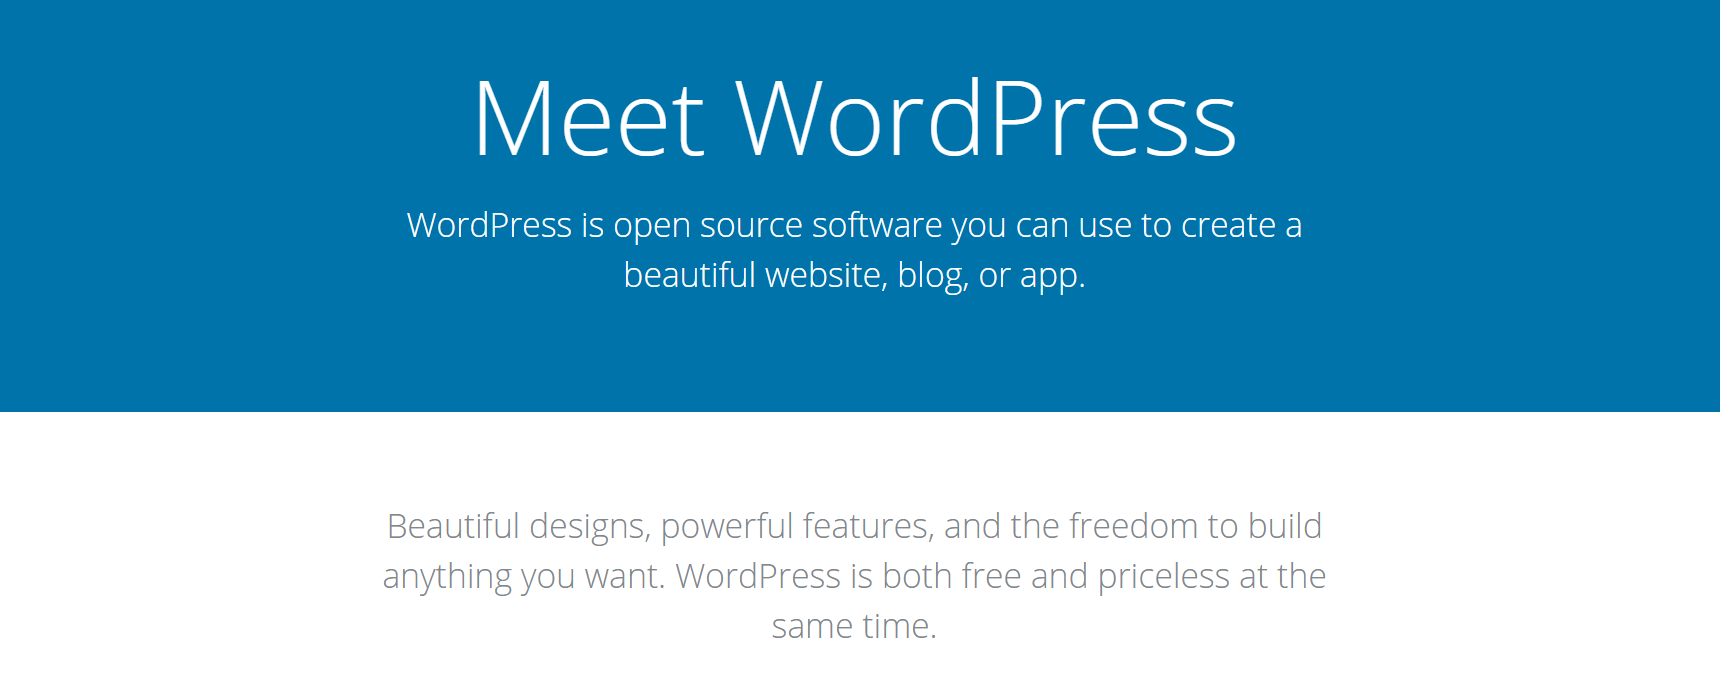 The WordPress website.